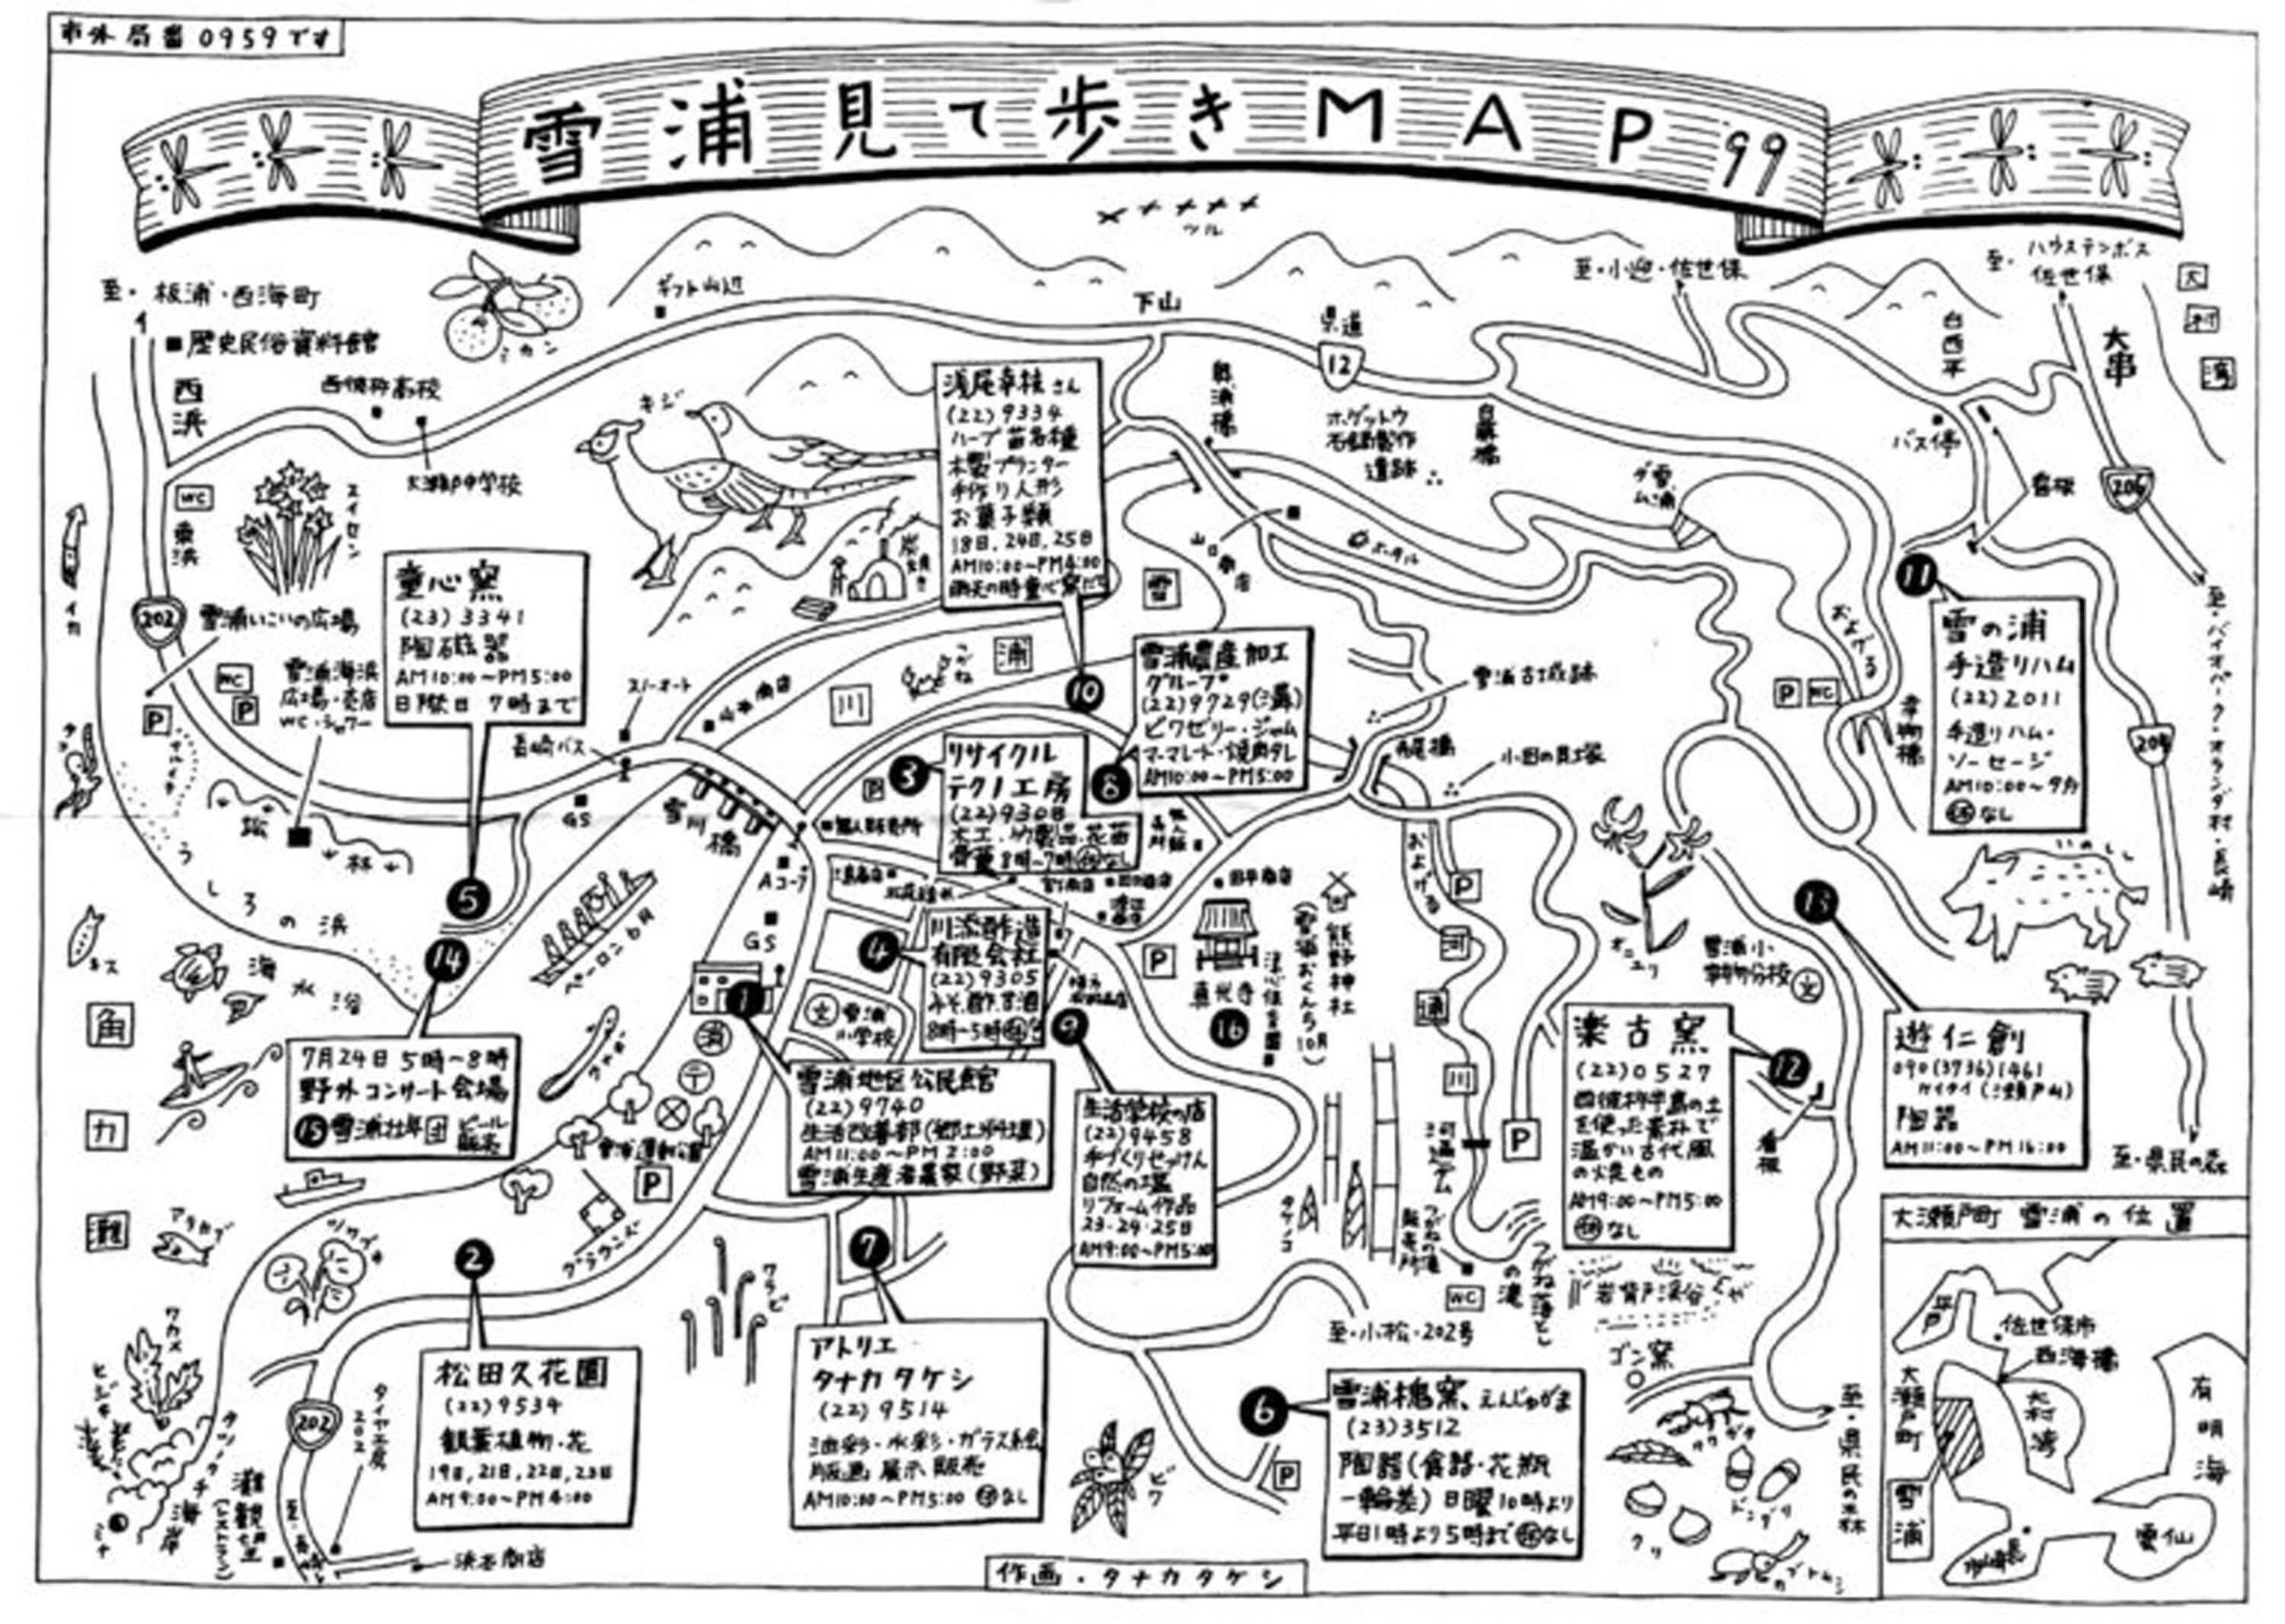 1999年につくられた雪浦地区のまちあるきマップ